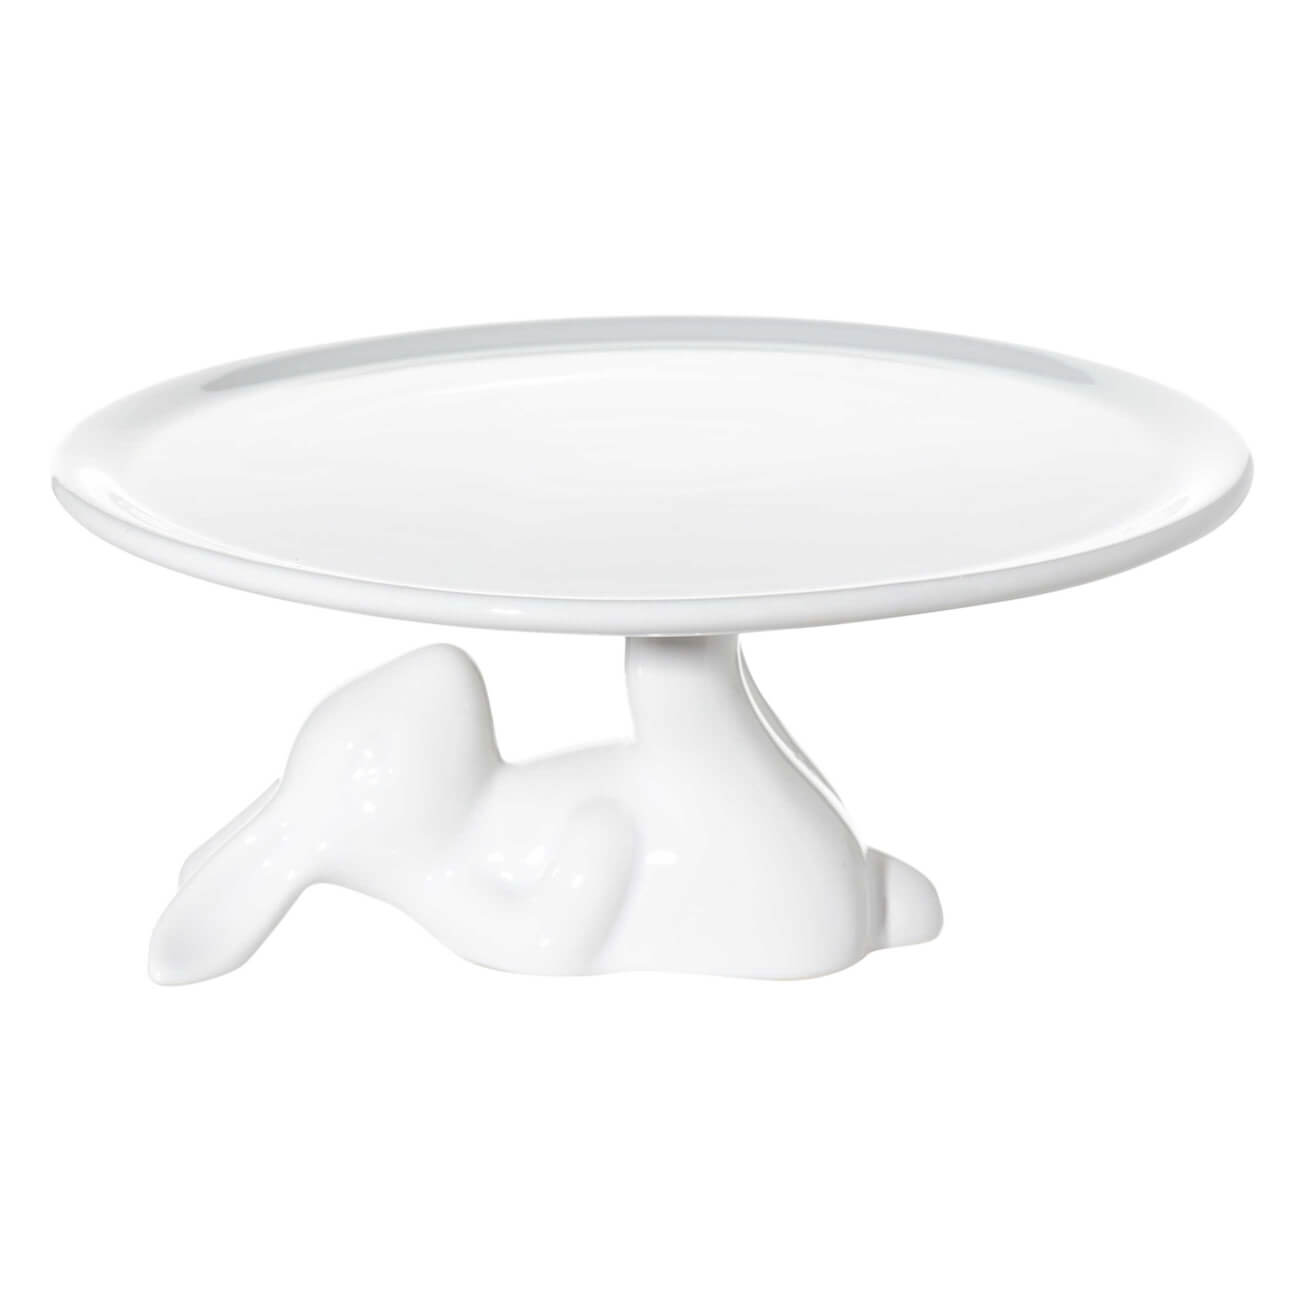 Блюдо на ножке, 22x9 см, керамика, белое, Кролик, Easter блюдо на ножке 22x9 см керамика белое кролик easter